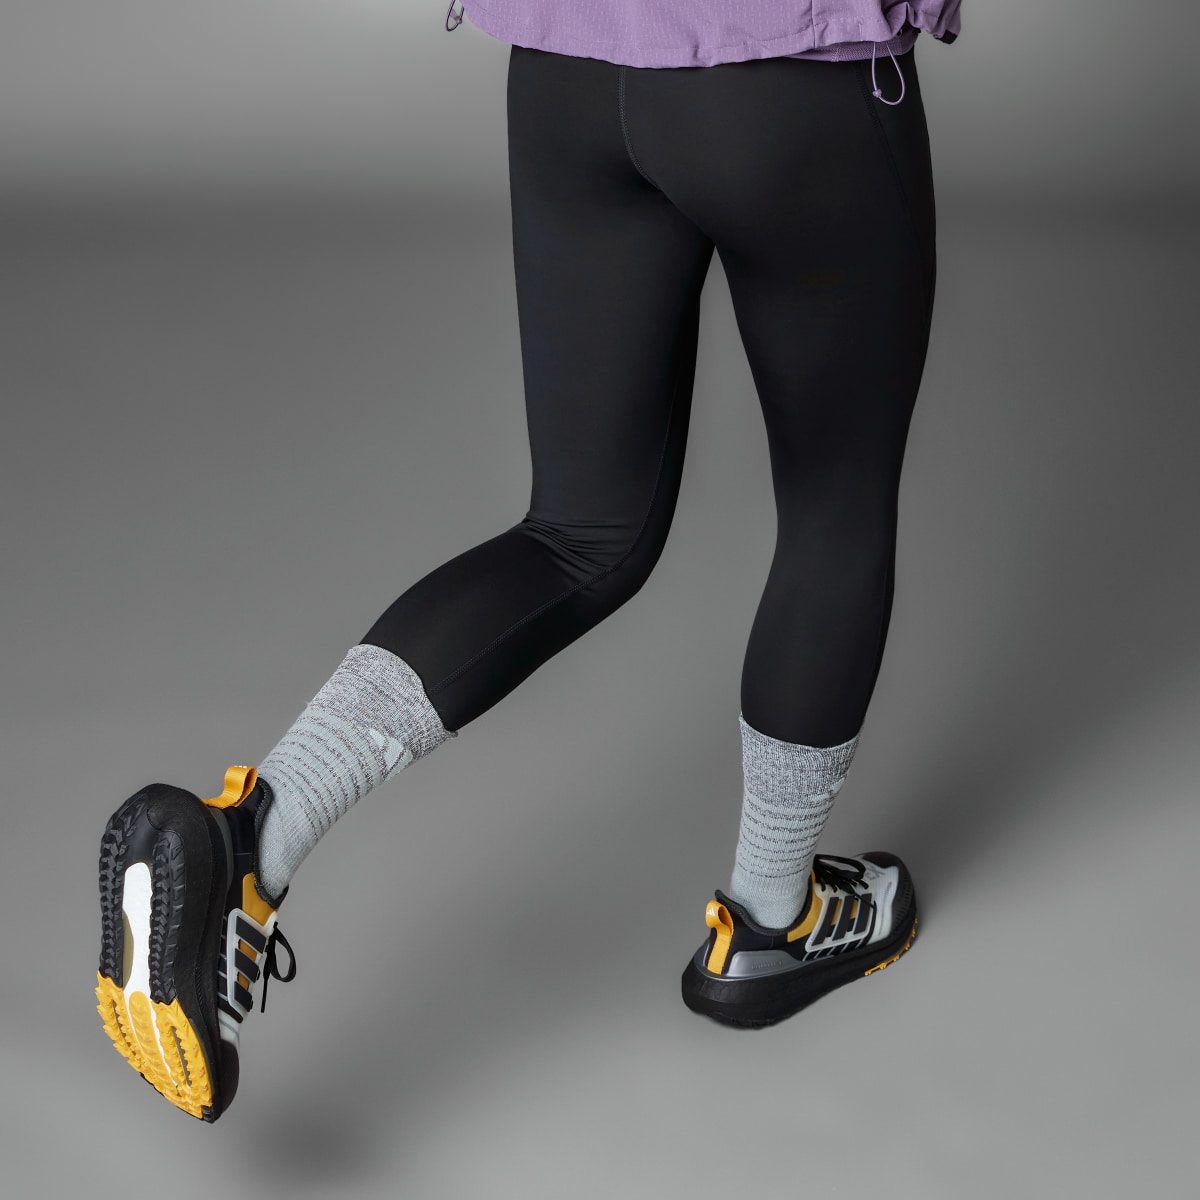 Adidas Ultraboost Light GORE-TEX Running Shoes. 4